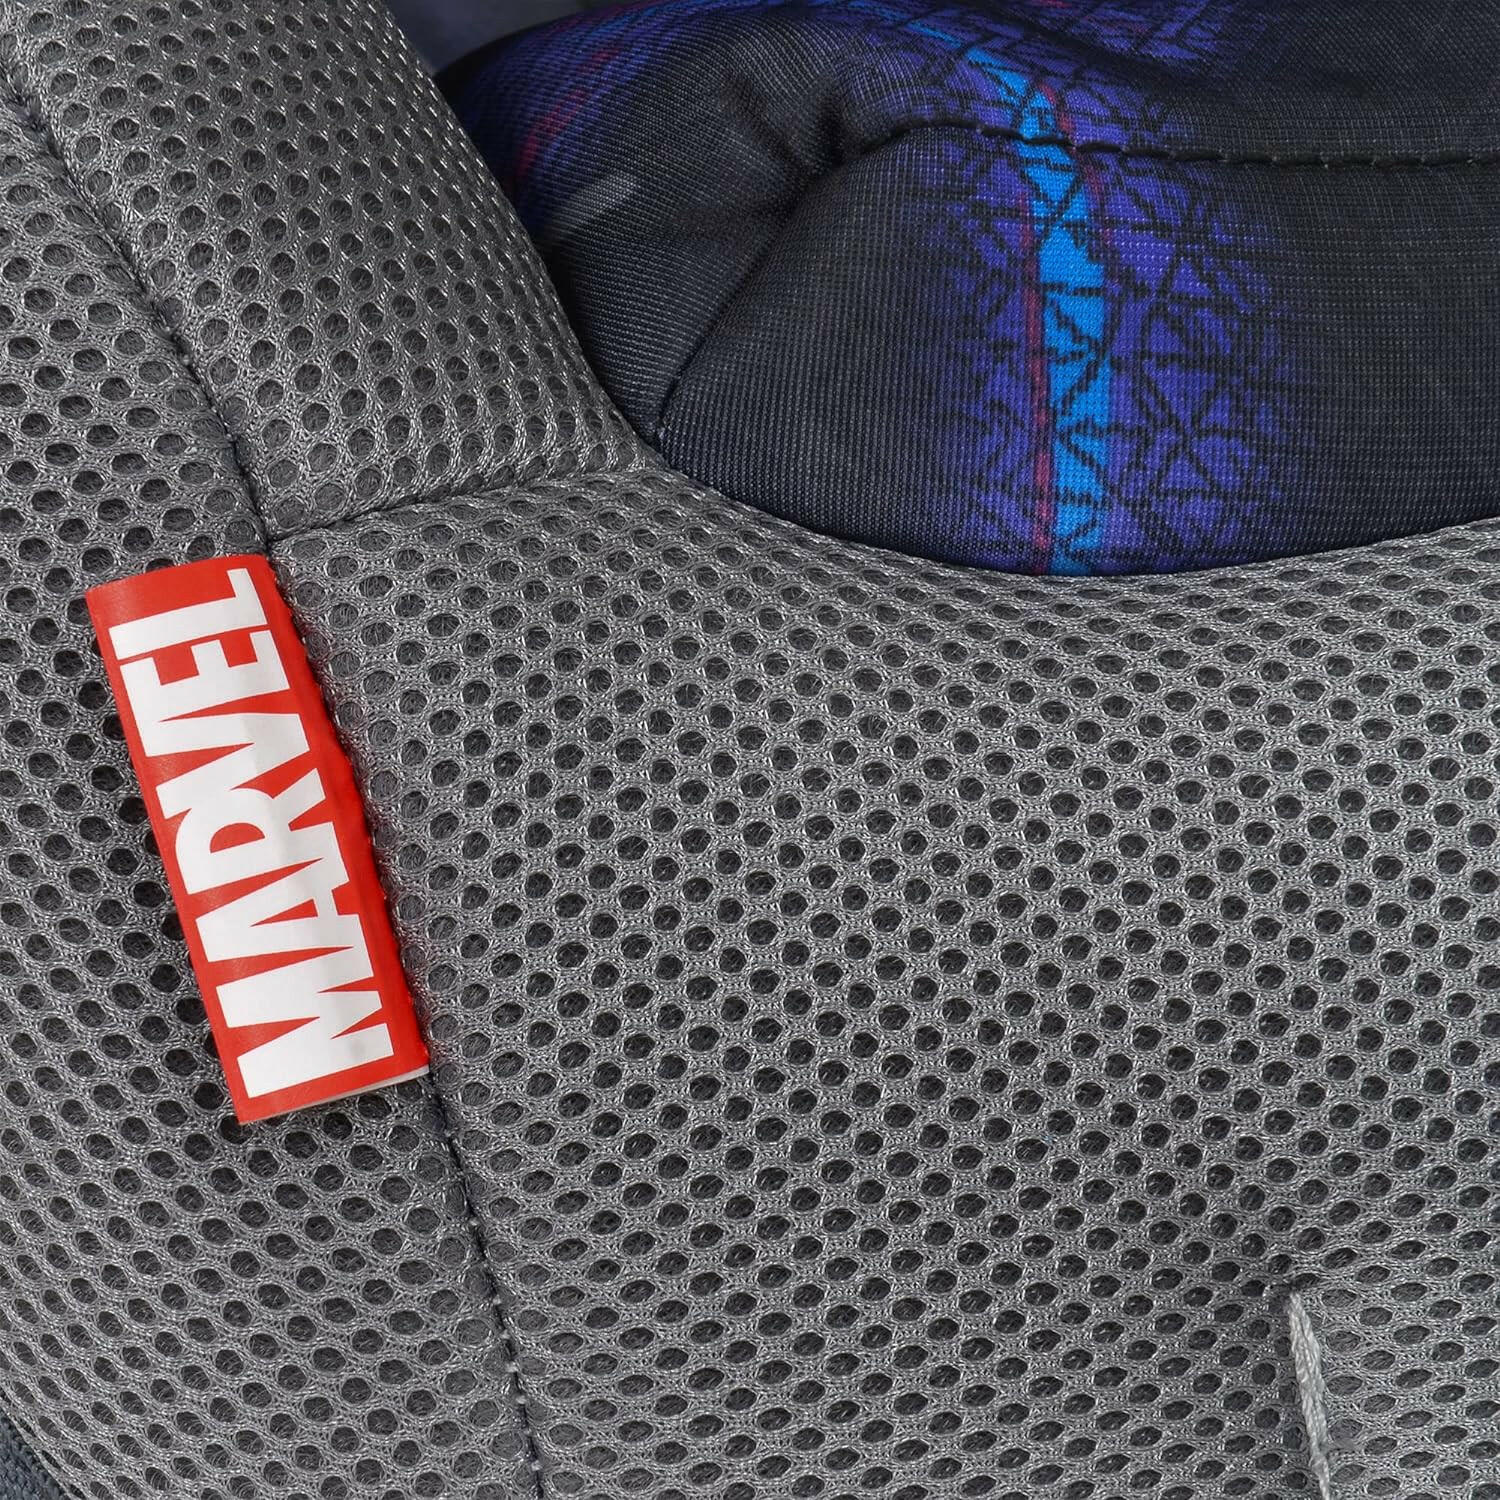 Kids Marvel Black Panther Adjustable Combination Booster Car Seat